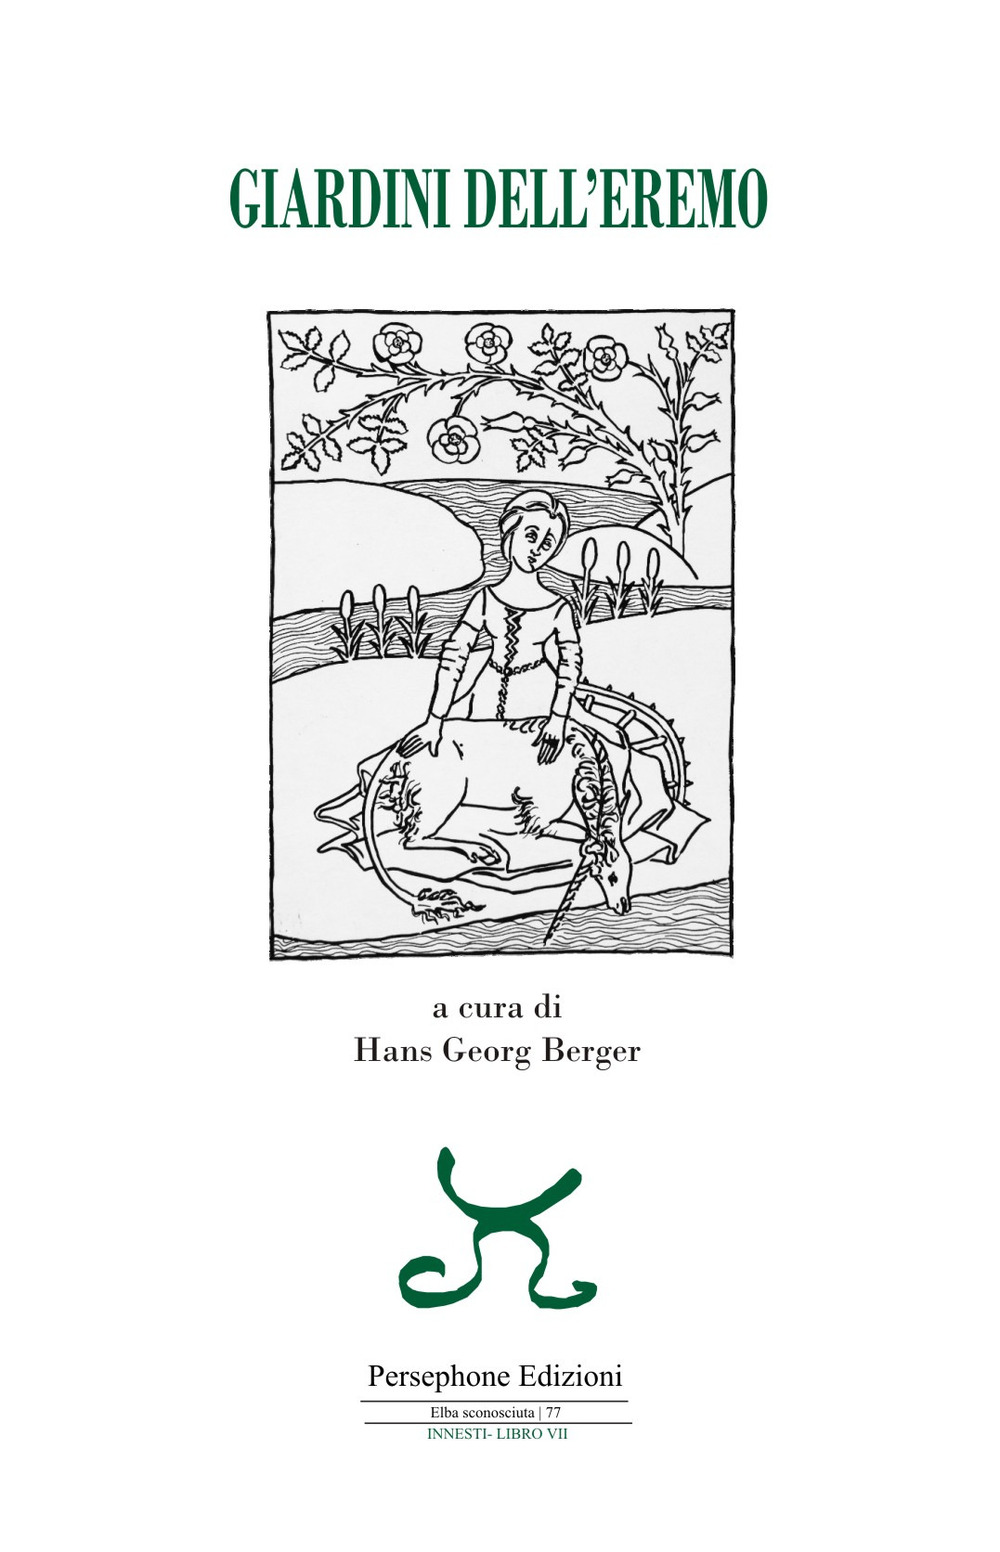 Libri A Cura Di Hans Georg Berger - Giardini Dell'Eremo NUOVO SIGILLATO, EDIZIONE DEL 05/05/2022 SUBITO DISPONIBILE